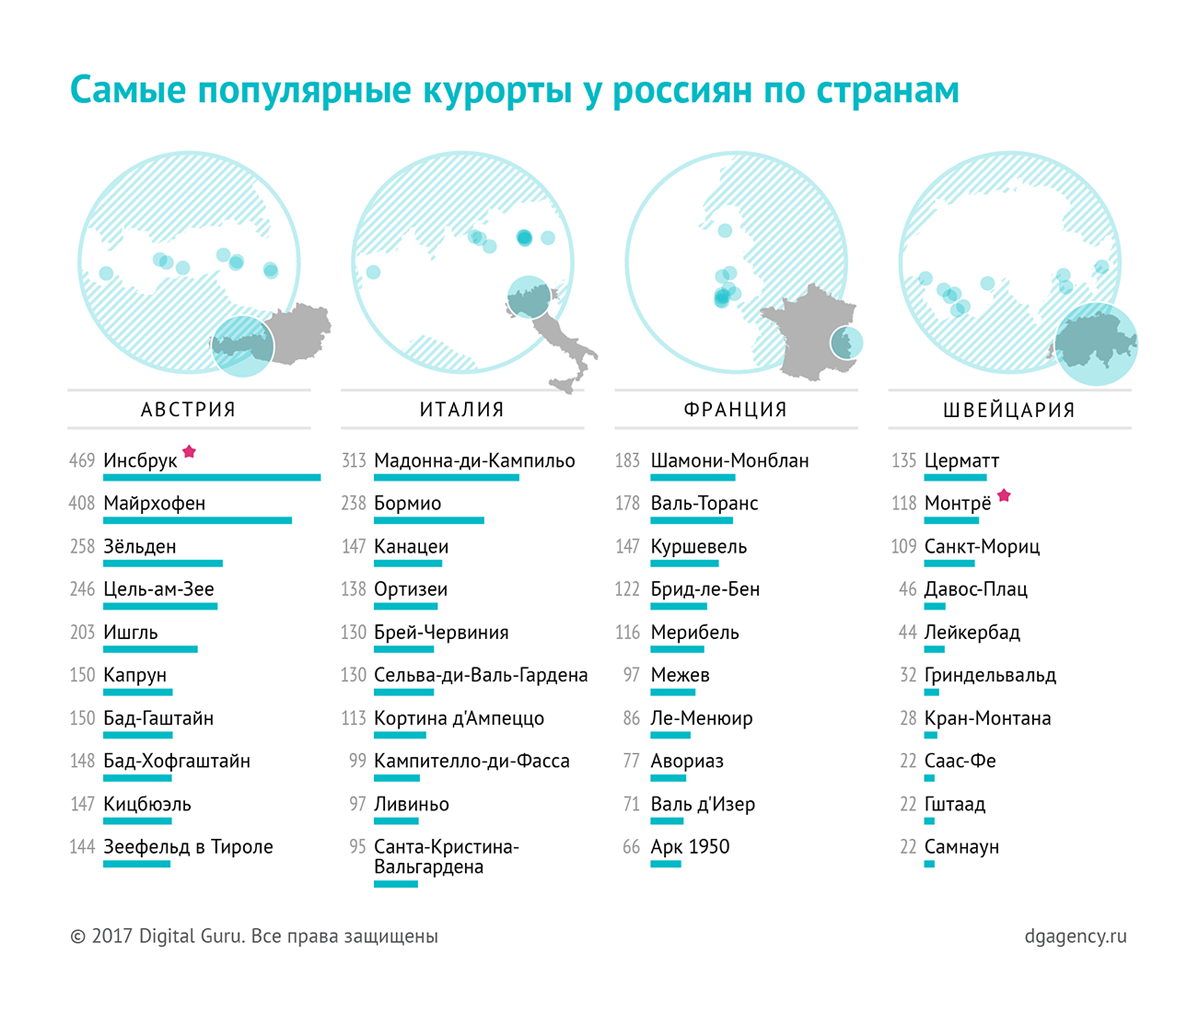 Самые популярные курорты у россиян по странам — инфографика с картограммами, точечными картами и полосовыми диаграммами